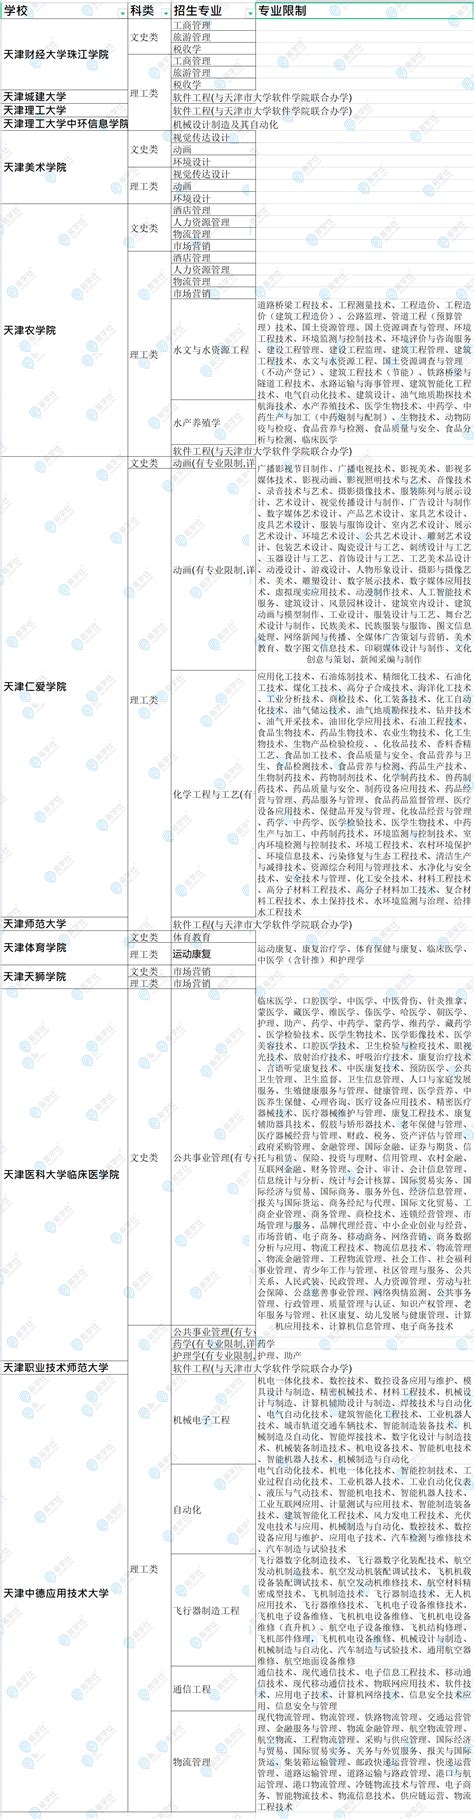 2023天津专升本志愿填报规则改革：可填5所平行学校志愿-易学仕专升本网